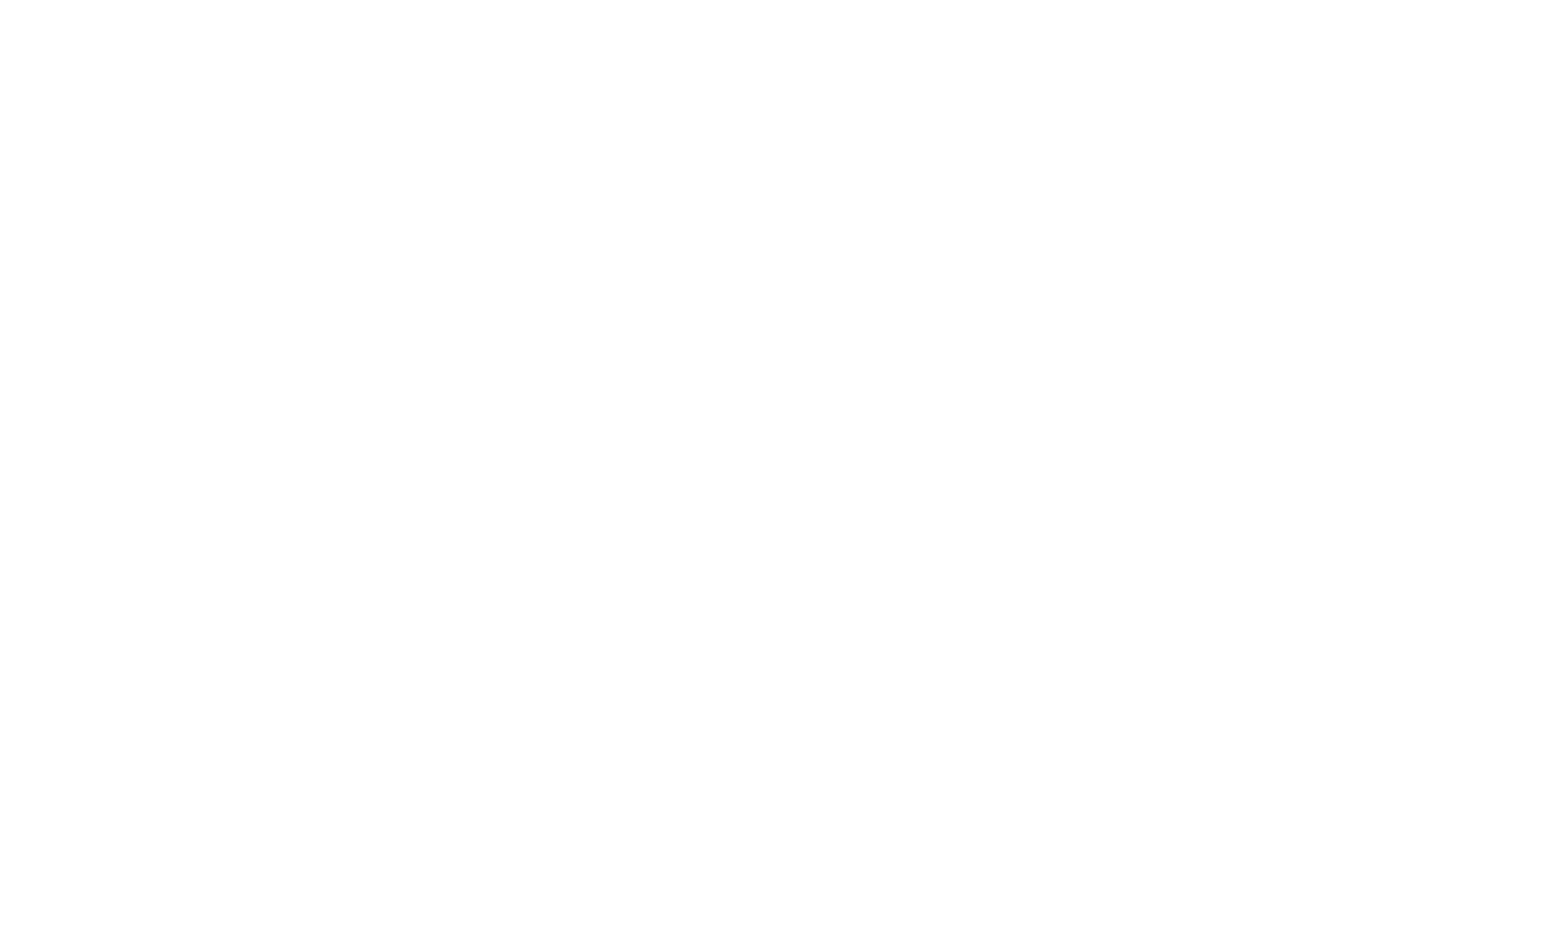 Psychologische Praxis Sarah Freund in Schiffdorf